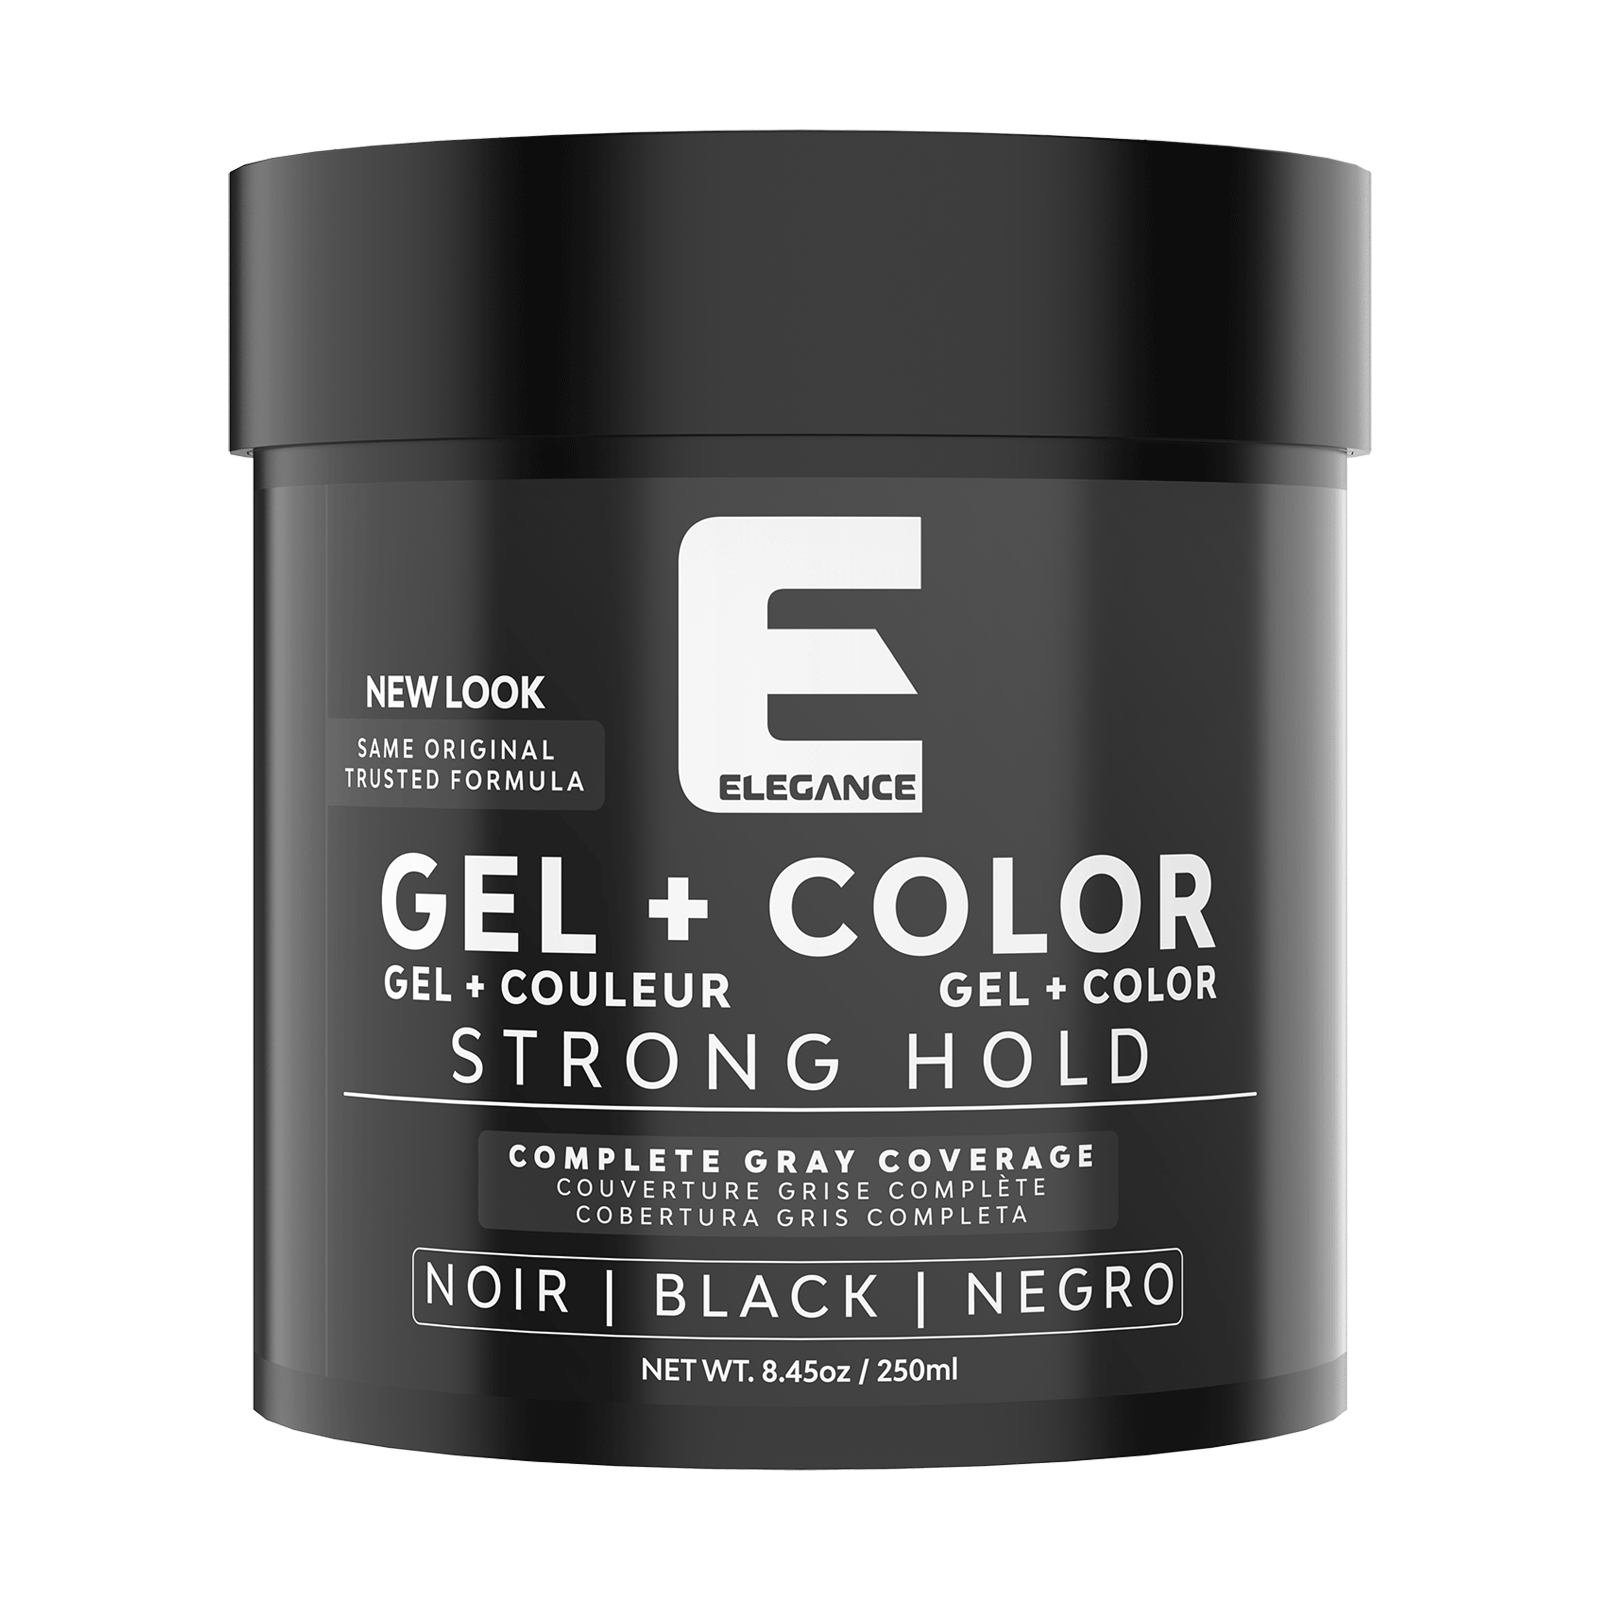 Hair Styling Gel plus Color - Black - Elegance | CosmoProf